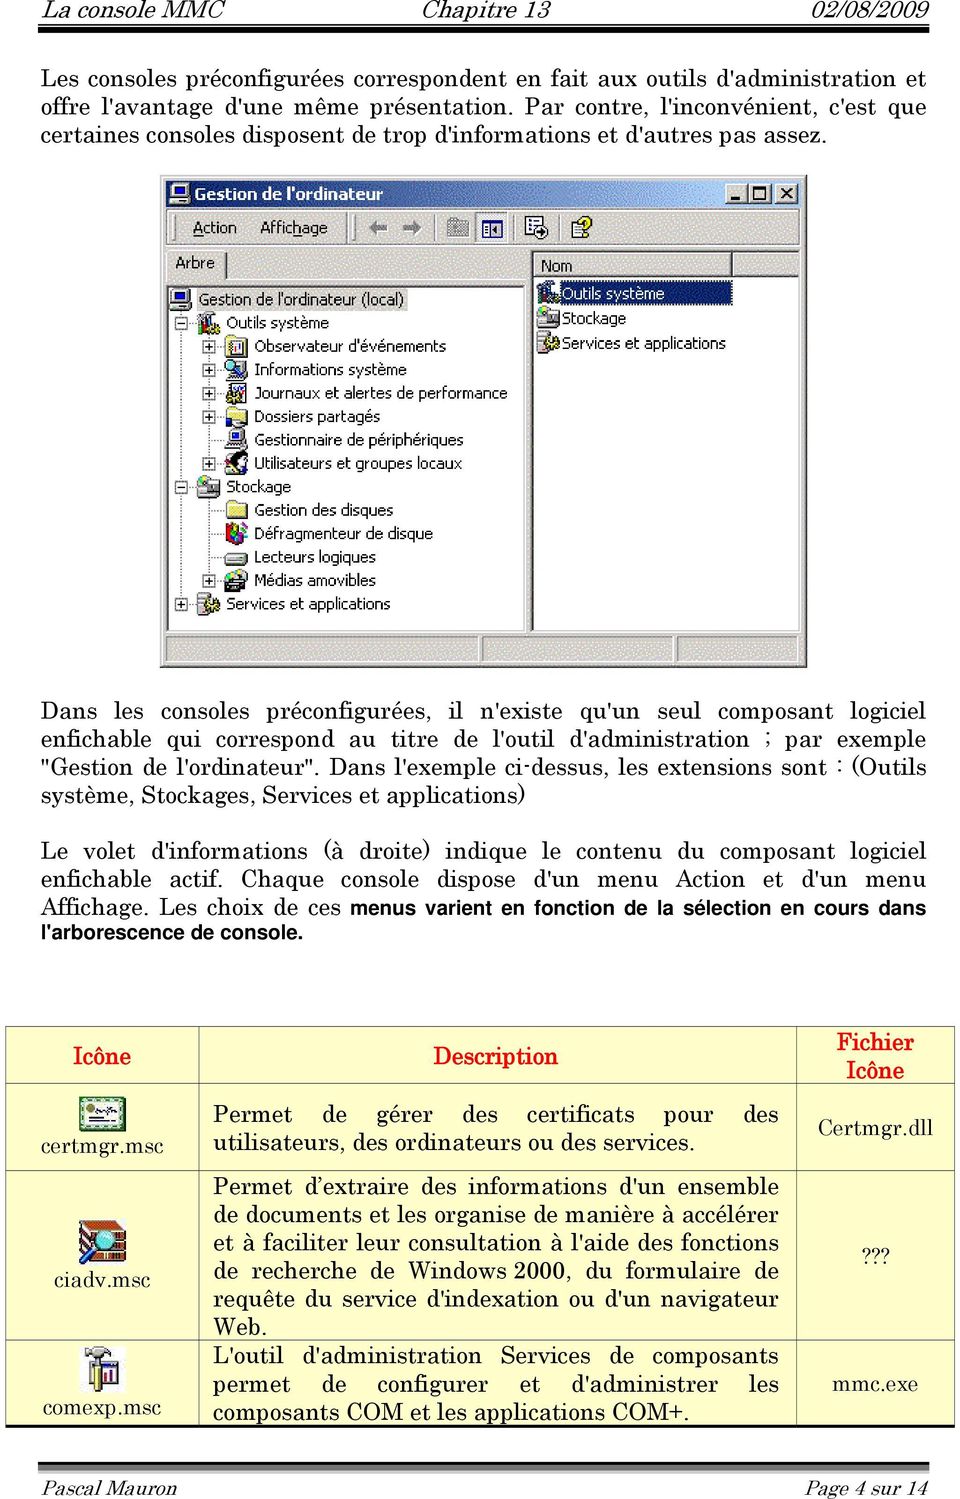 Dans les consoles préconfigurées, il n'existe qu'un seul composant logiciel enfichable qui correspond au titre de l'outil d'administration ; par exemple "Gestion de l'ordinateur".